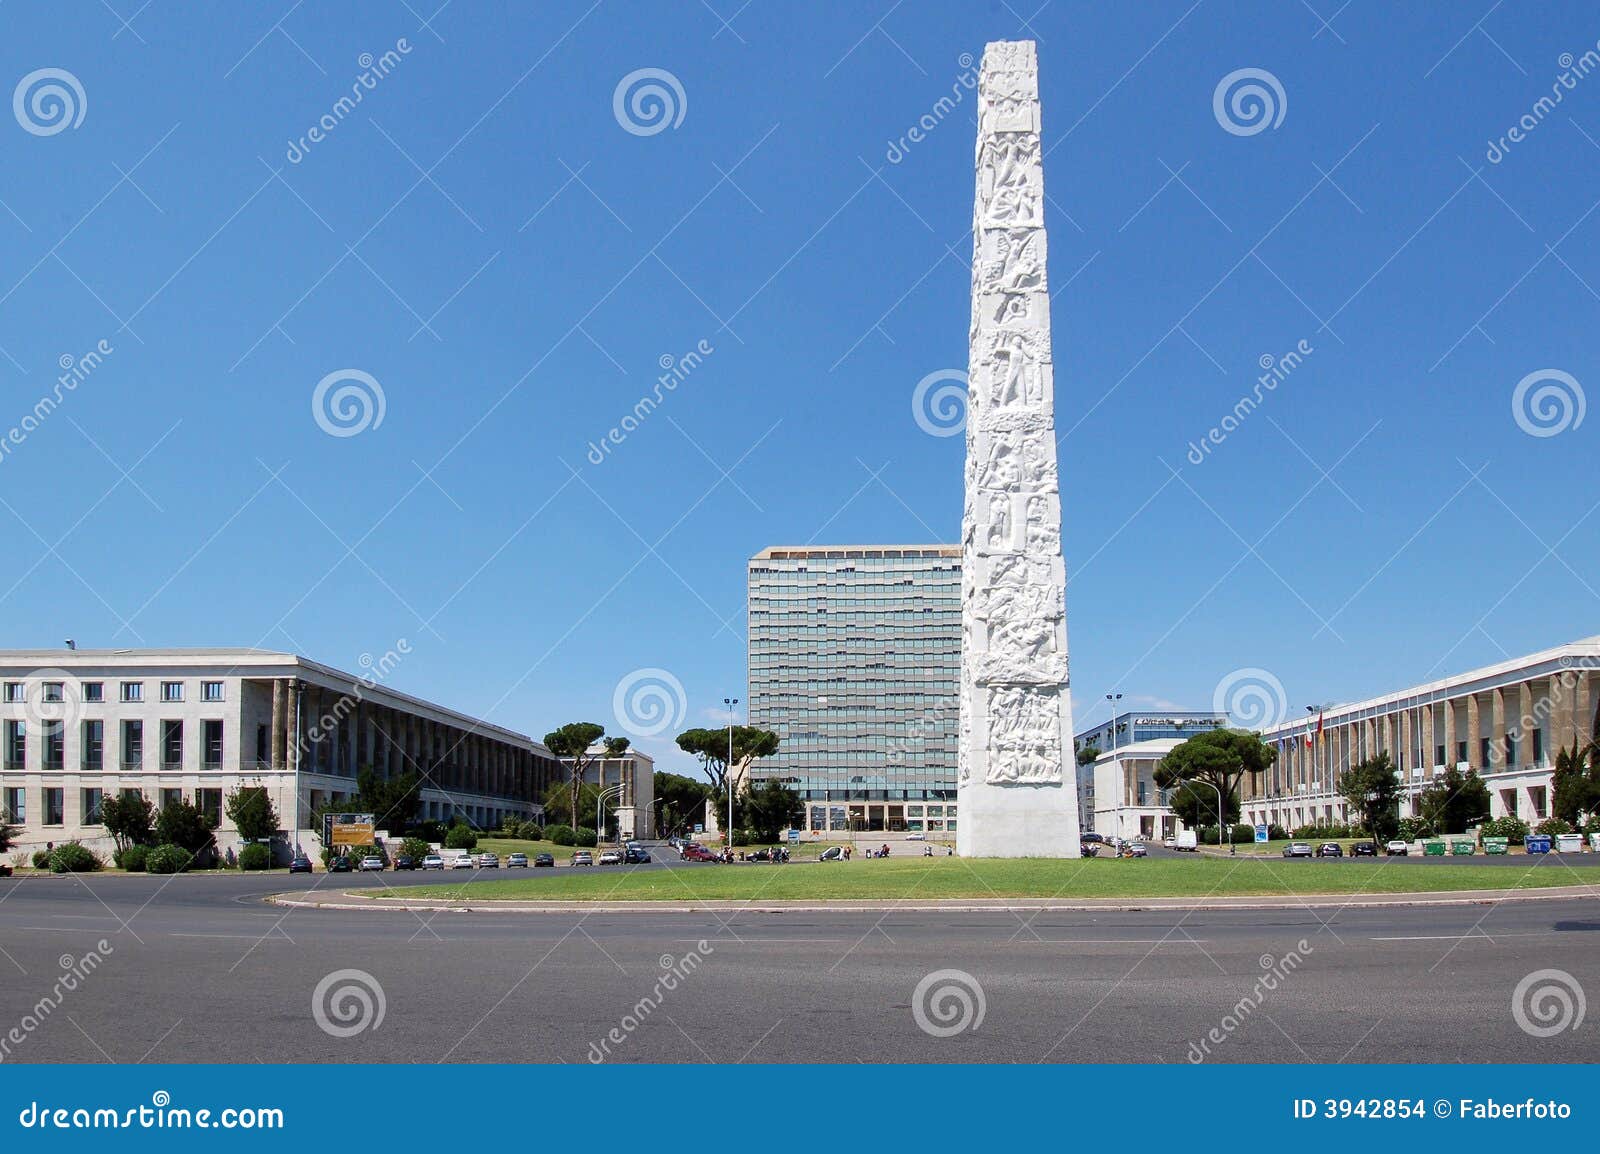 eur obelisk - rome